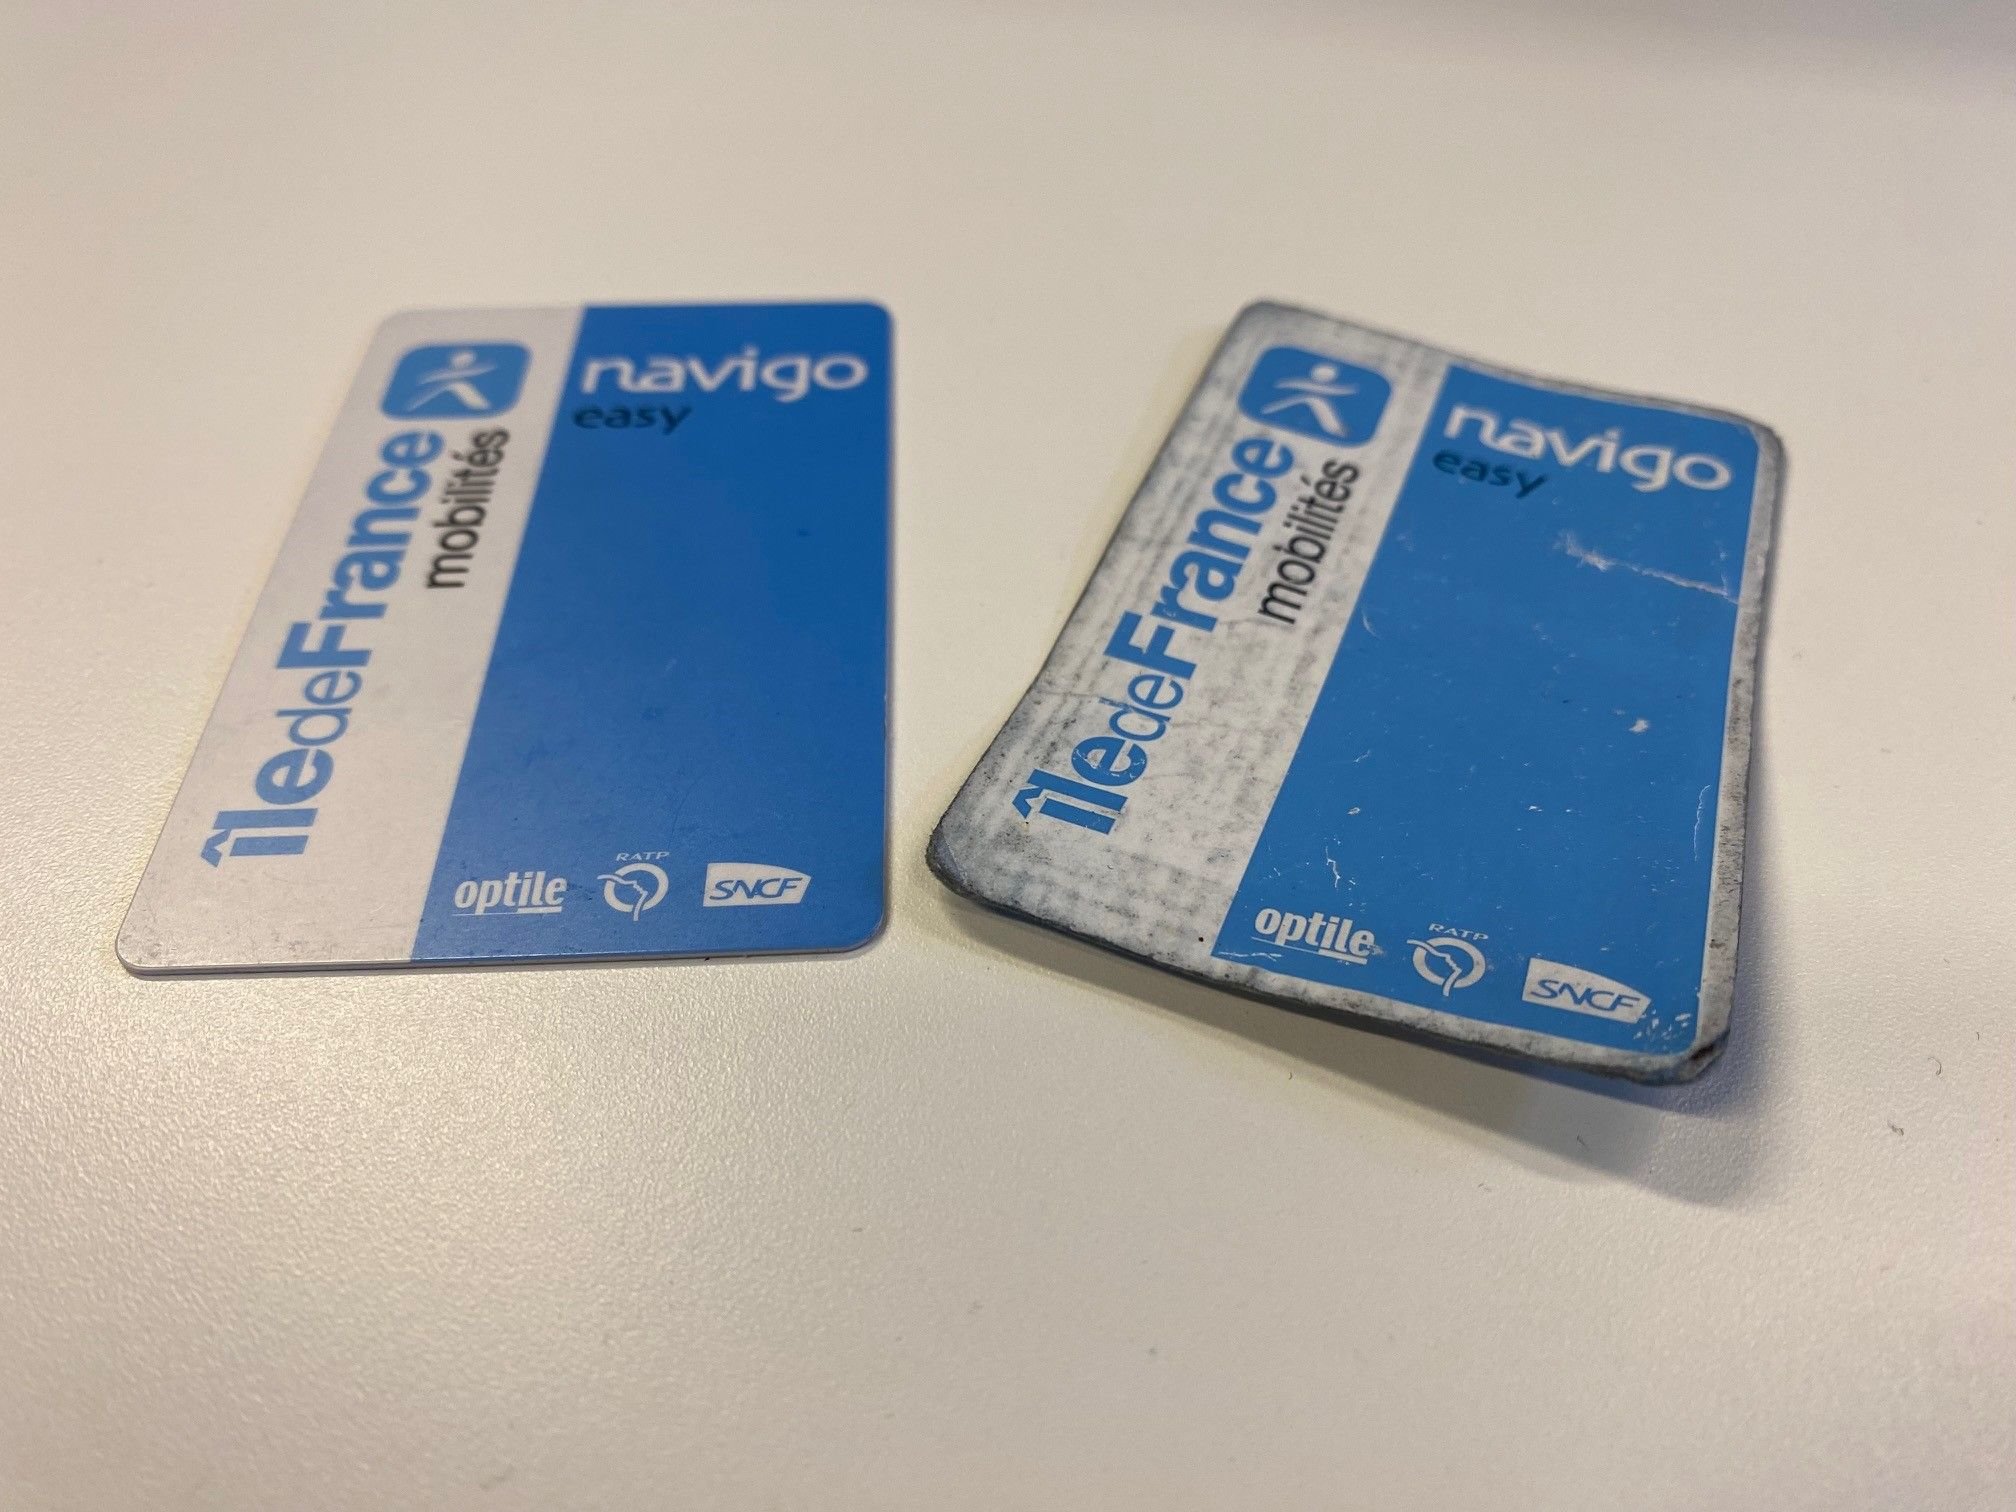 C'est quoi Navigo Easy, le «nouveau carnet de tickets de métro»  dématérialisé